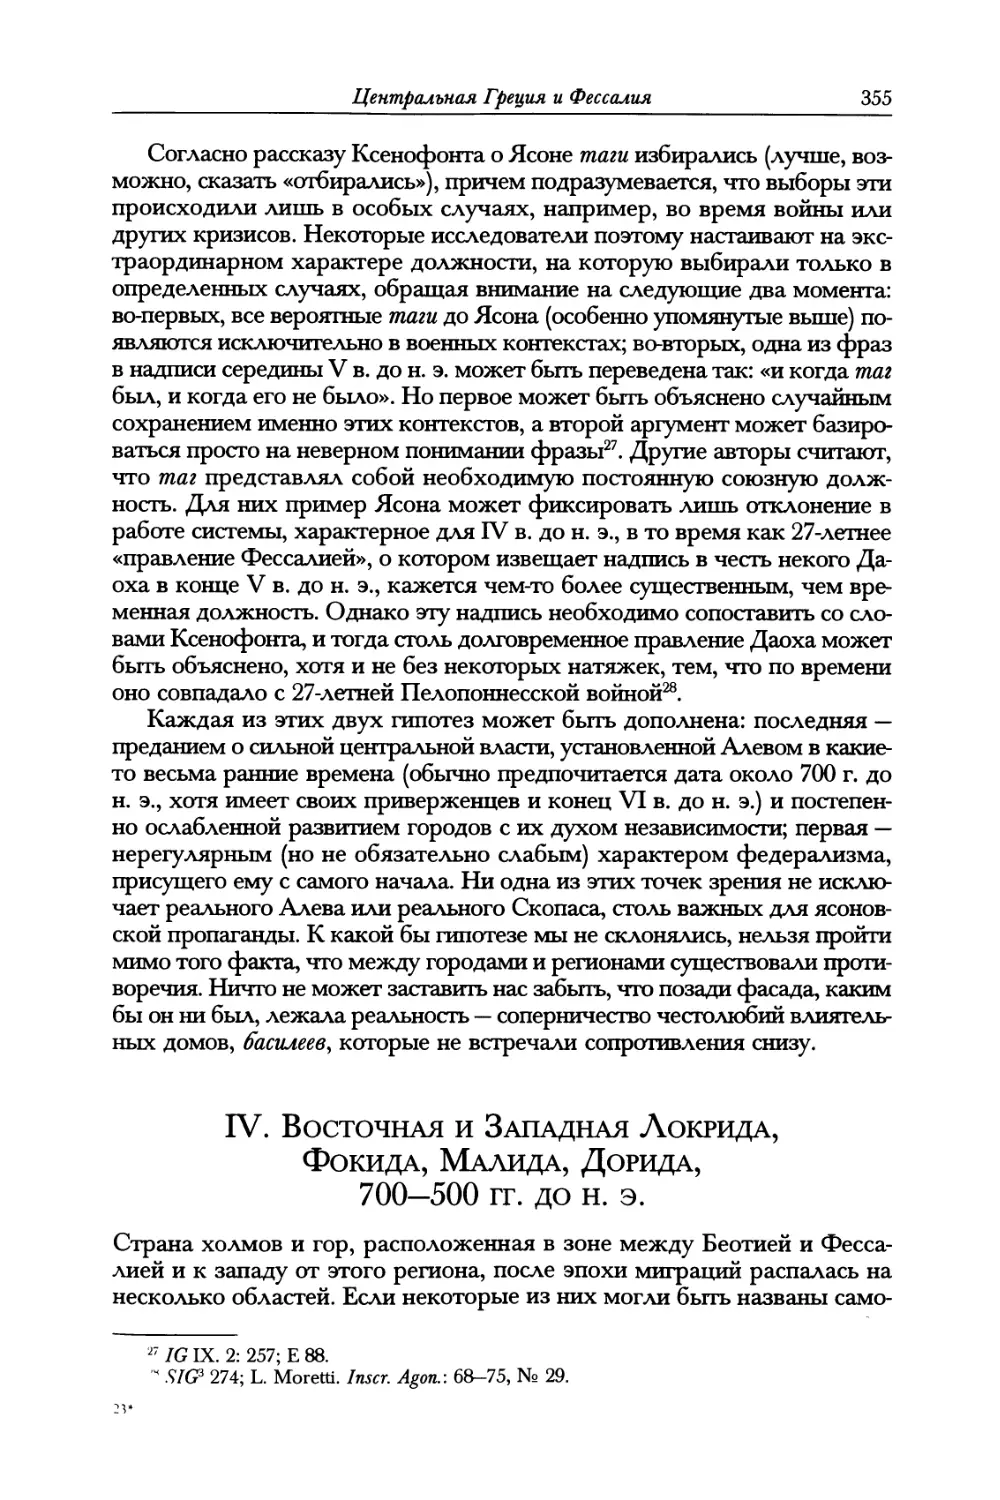 IV. Восточная и Западная Локрида, Фокида, Малида, Дорида, 700-500 гг. до н. э.